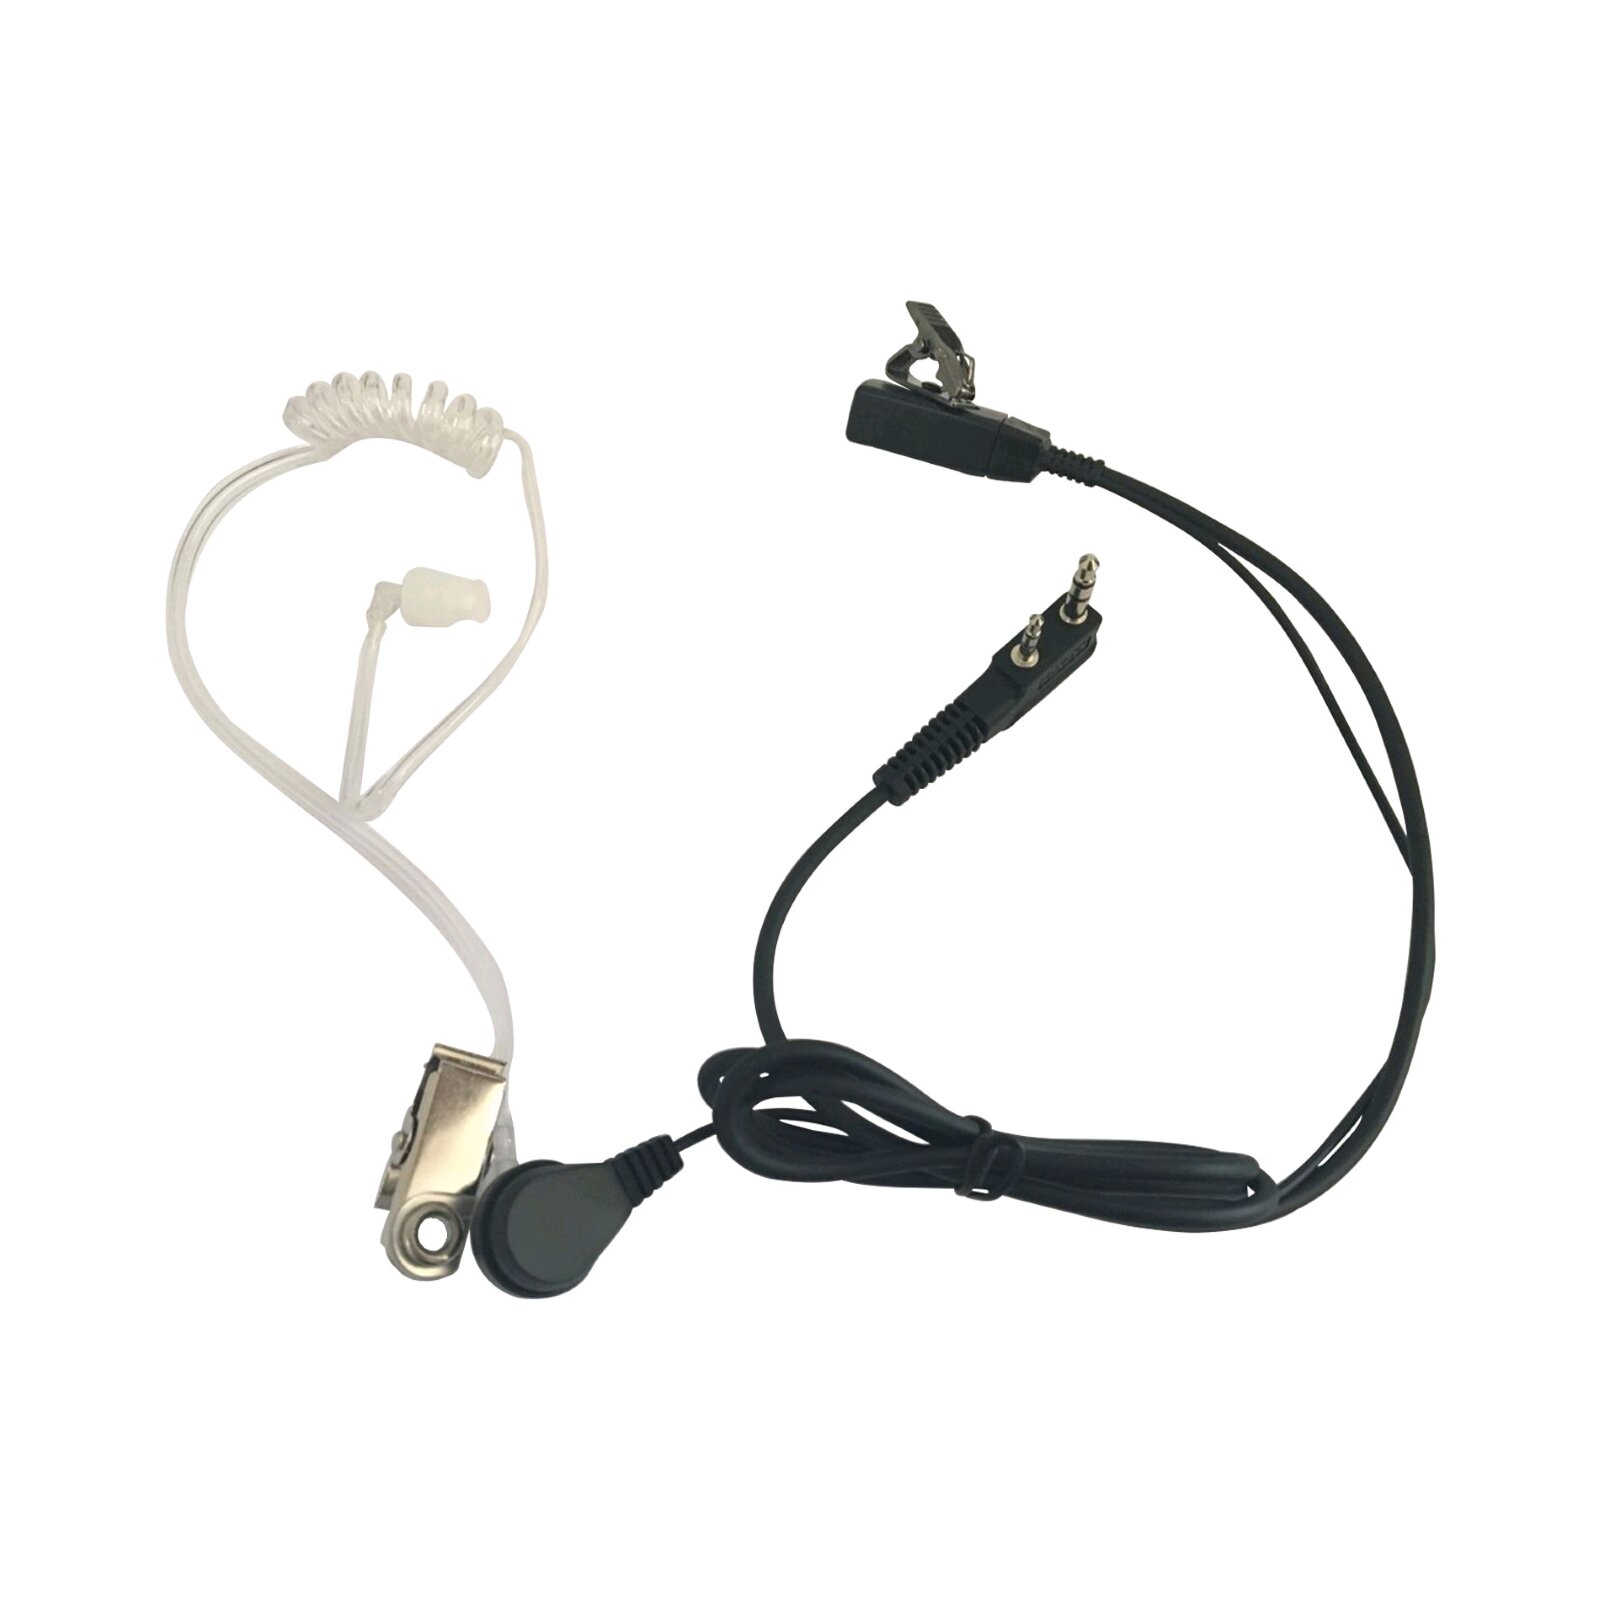 Power Acoustics In-Ear-Kopfhörer für Walkie Talkie (HS 07) : photo 1